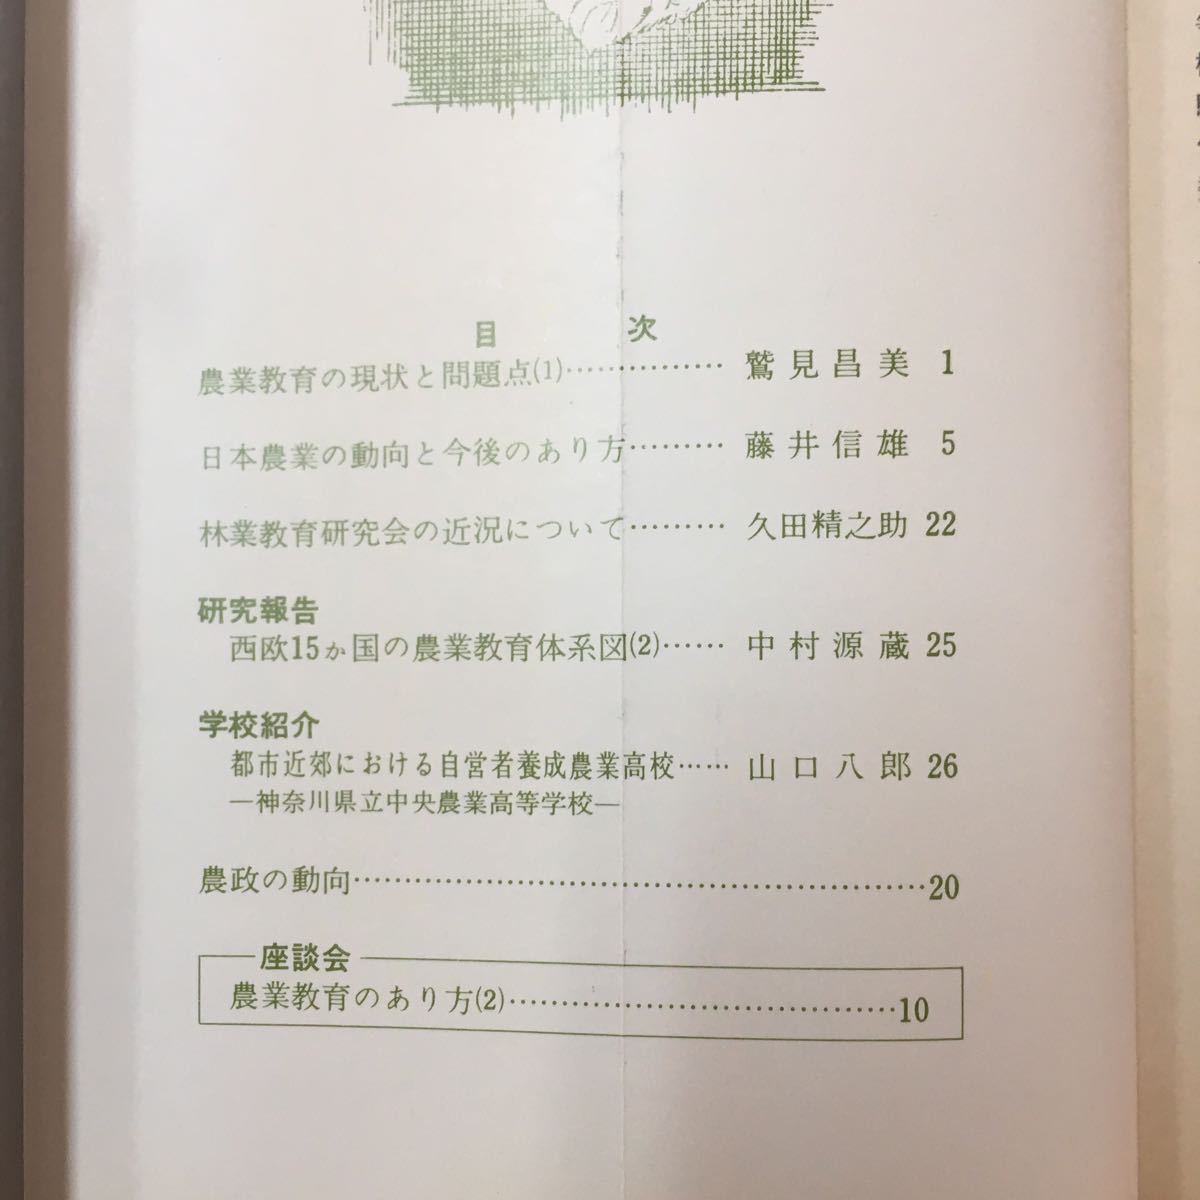 M6h-117 農業教育資料48 昭和43年12月10日発行 目次 農業教育の現状と問題点 日本農業の動向と今後のあり方 林業教育研究会の近況について_画像5